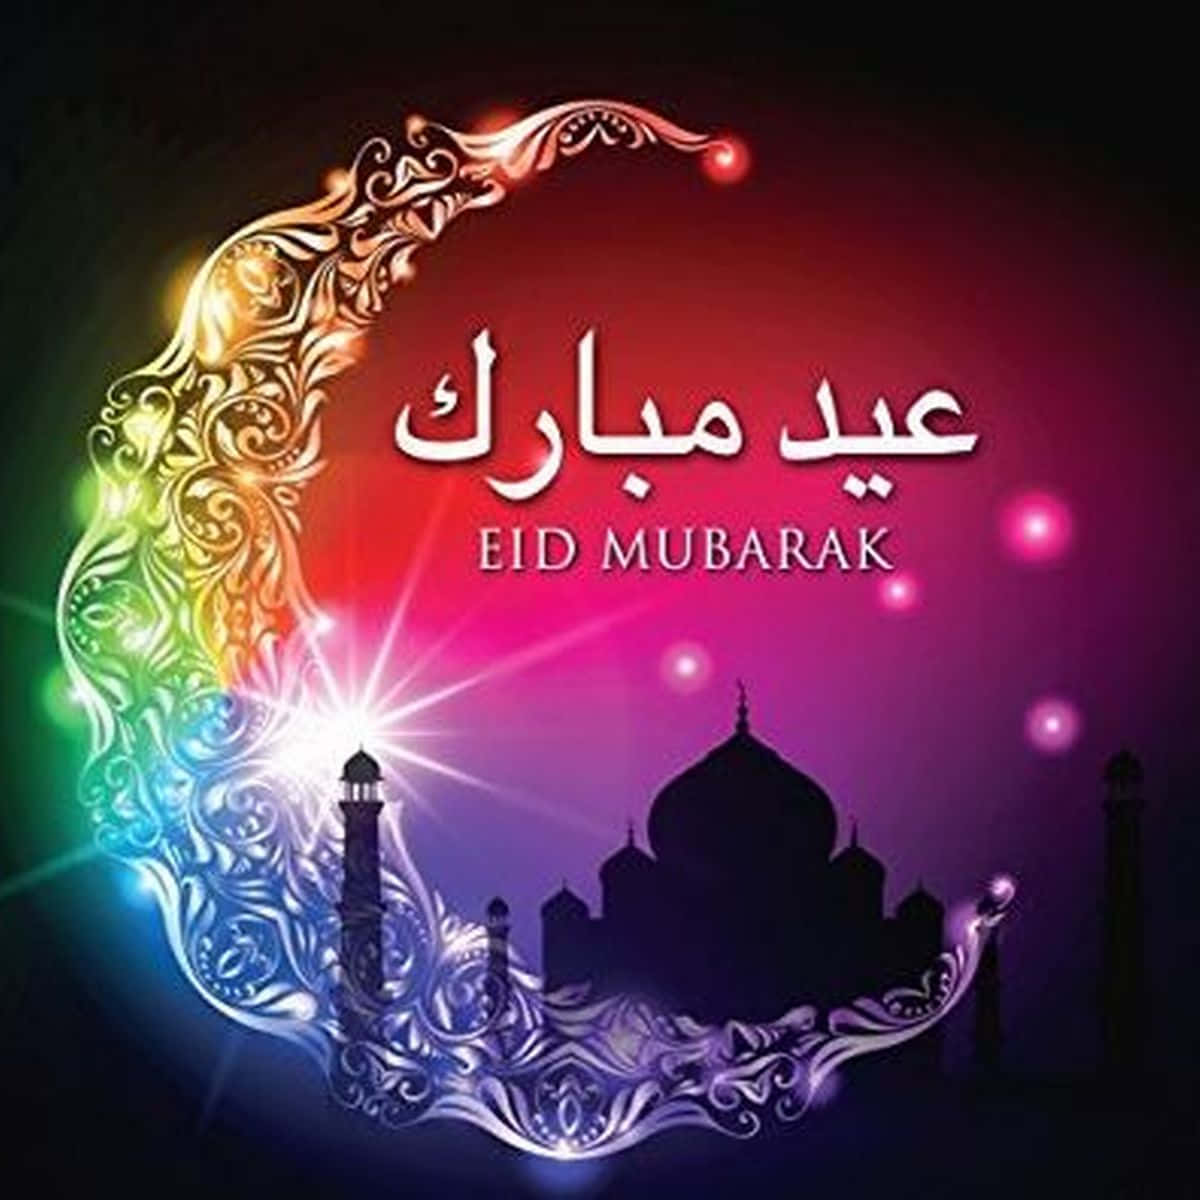 Önskardig Och Dina En Eid Mubarak Fylld Av Kärlek, Glädje Och Lycka!